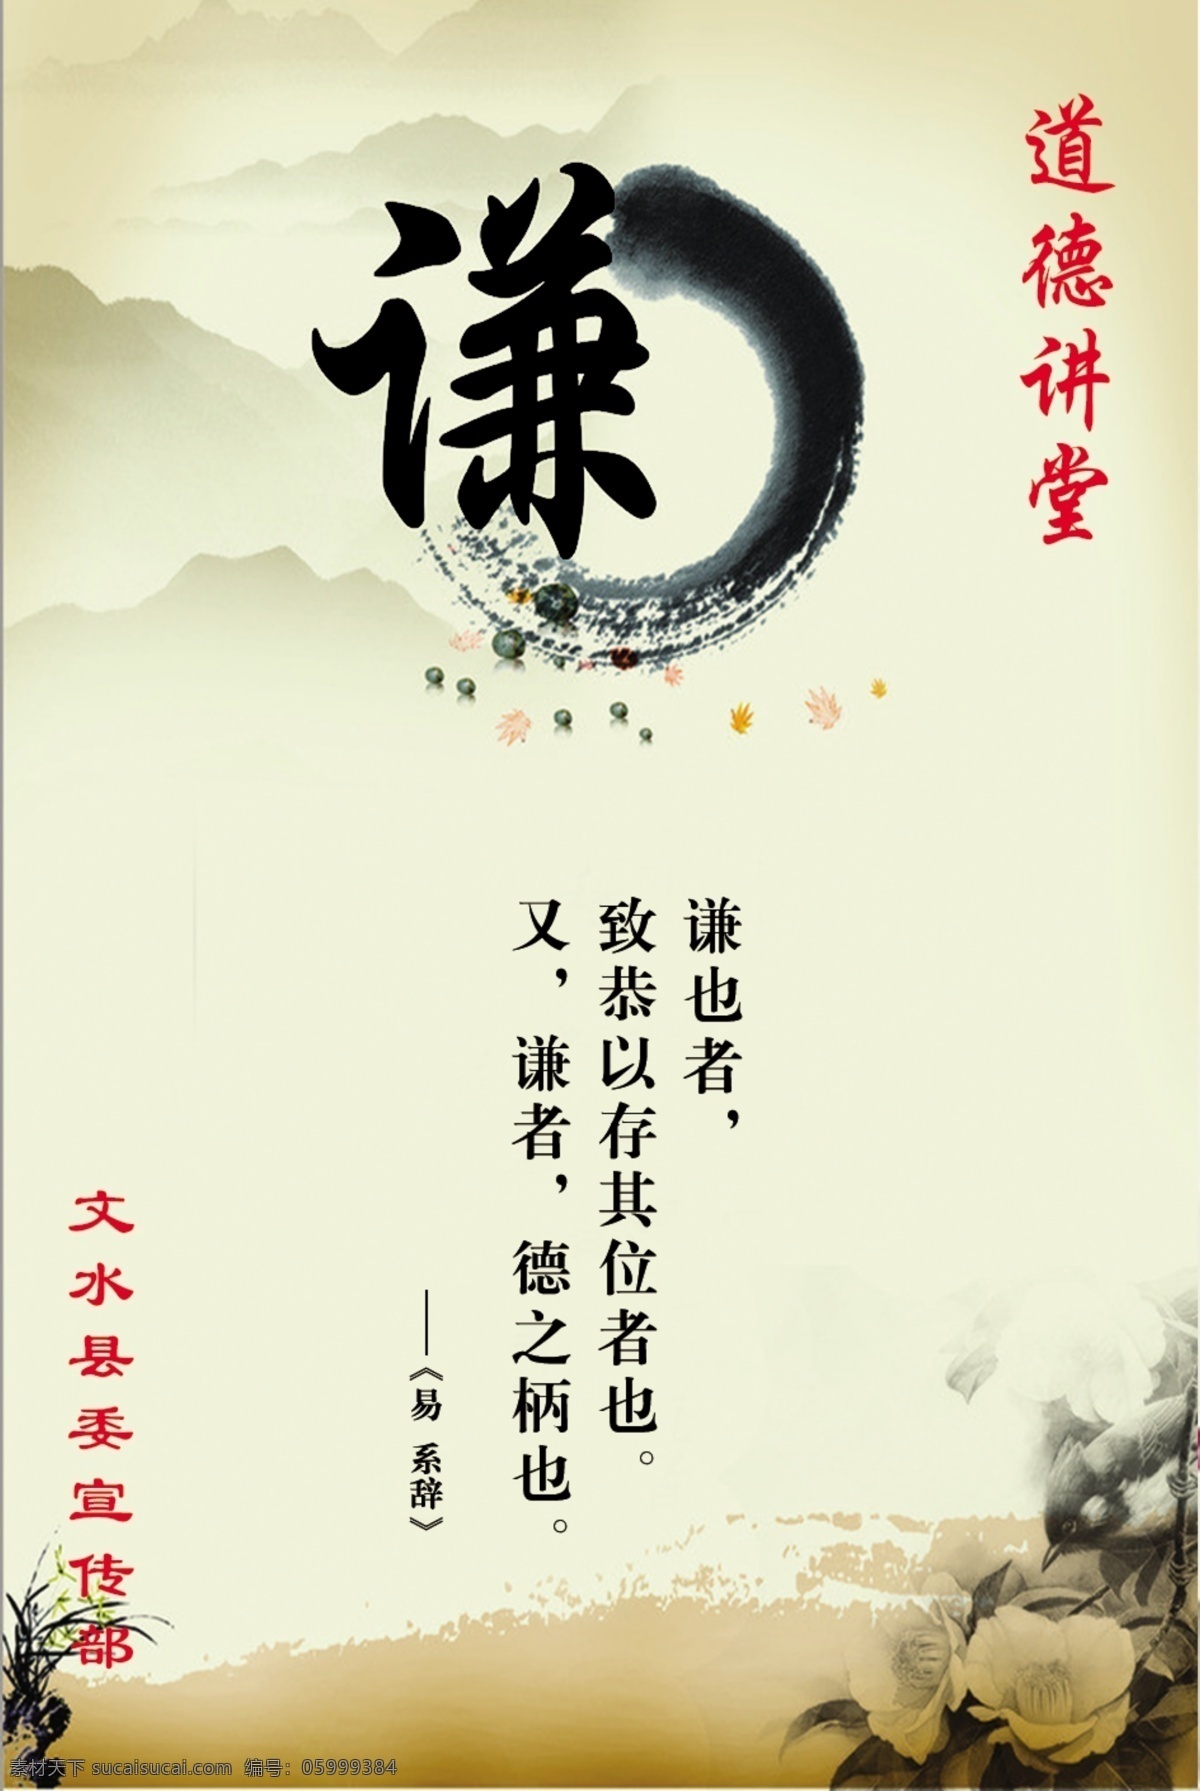 礼仪文化 谦让 文化 道德 礼仪 中国风 展板模板 广告设计模板 源文件